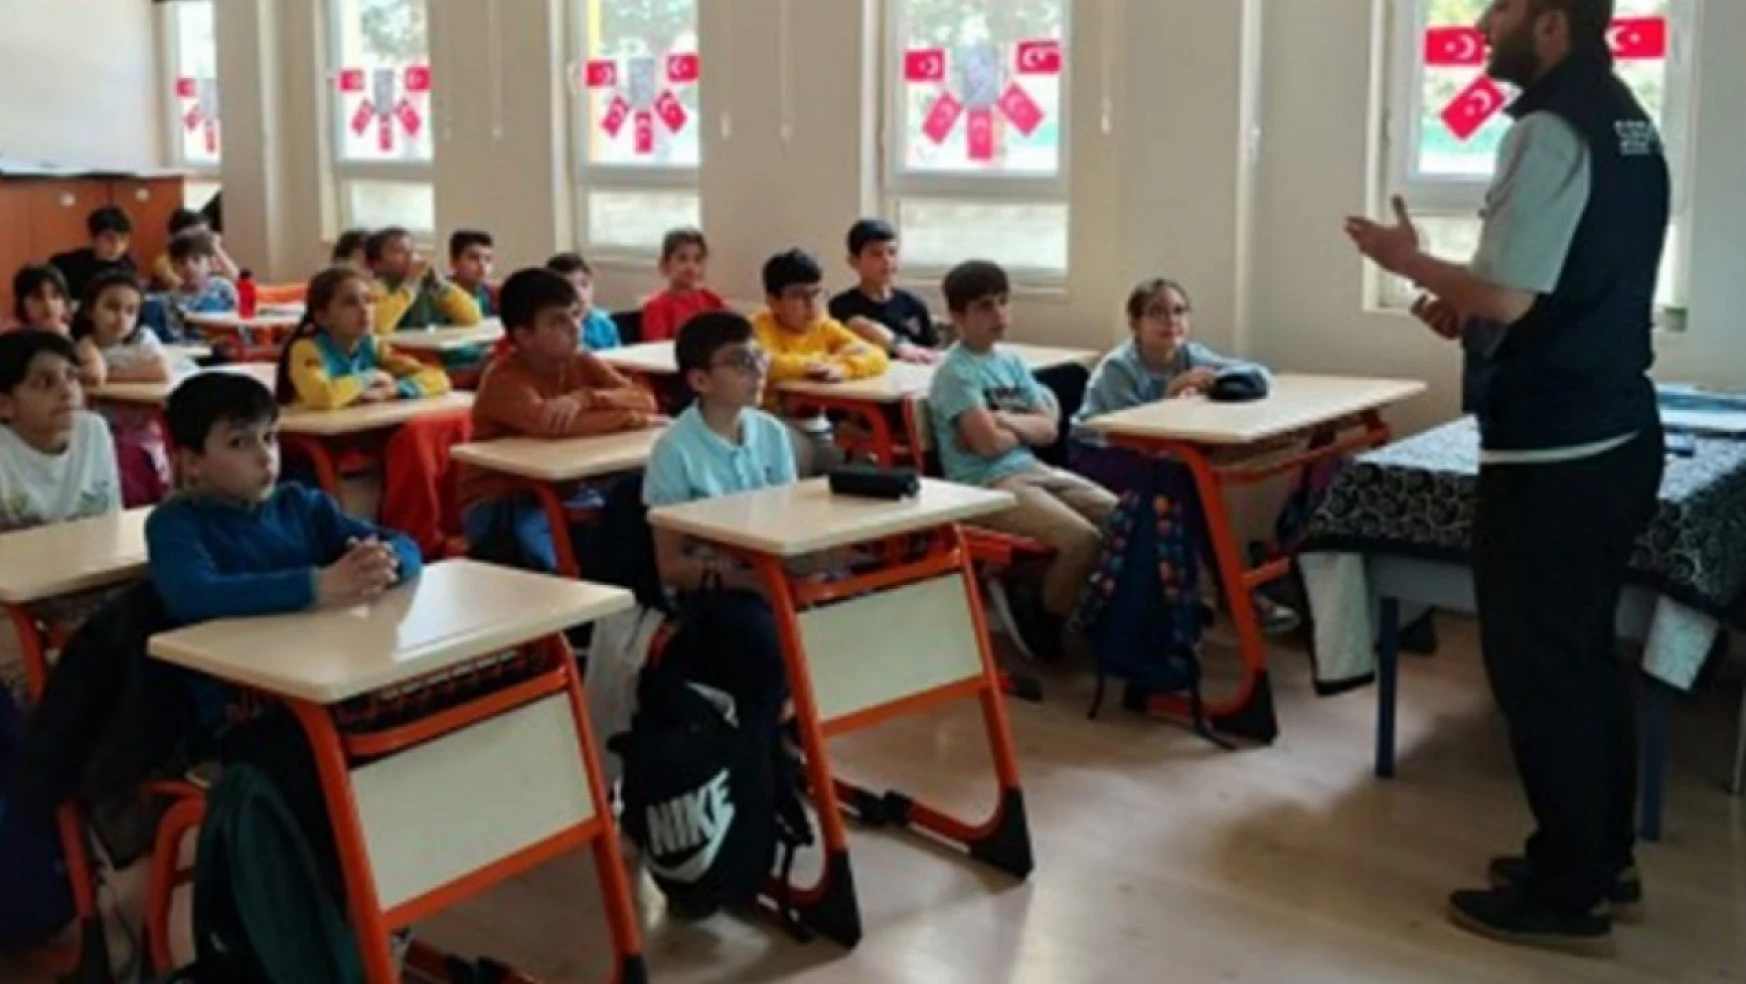 Kars'ta öğrenciler siber suçlara karşı bilgilendirildi